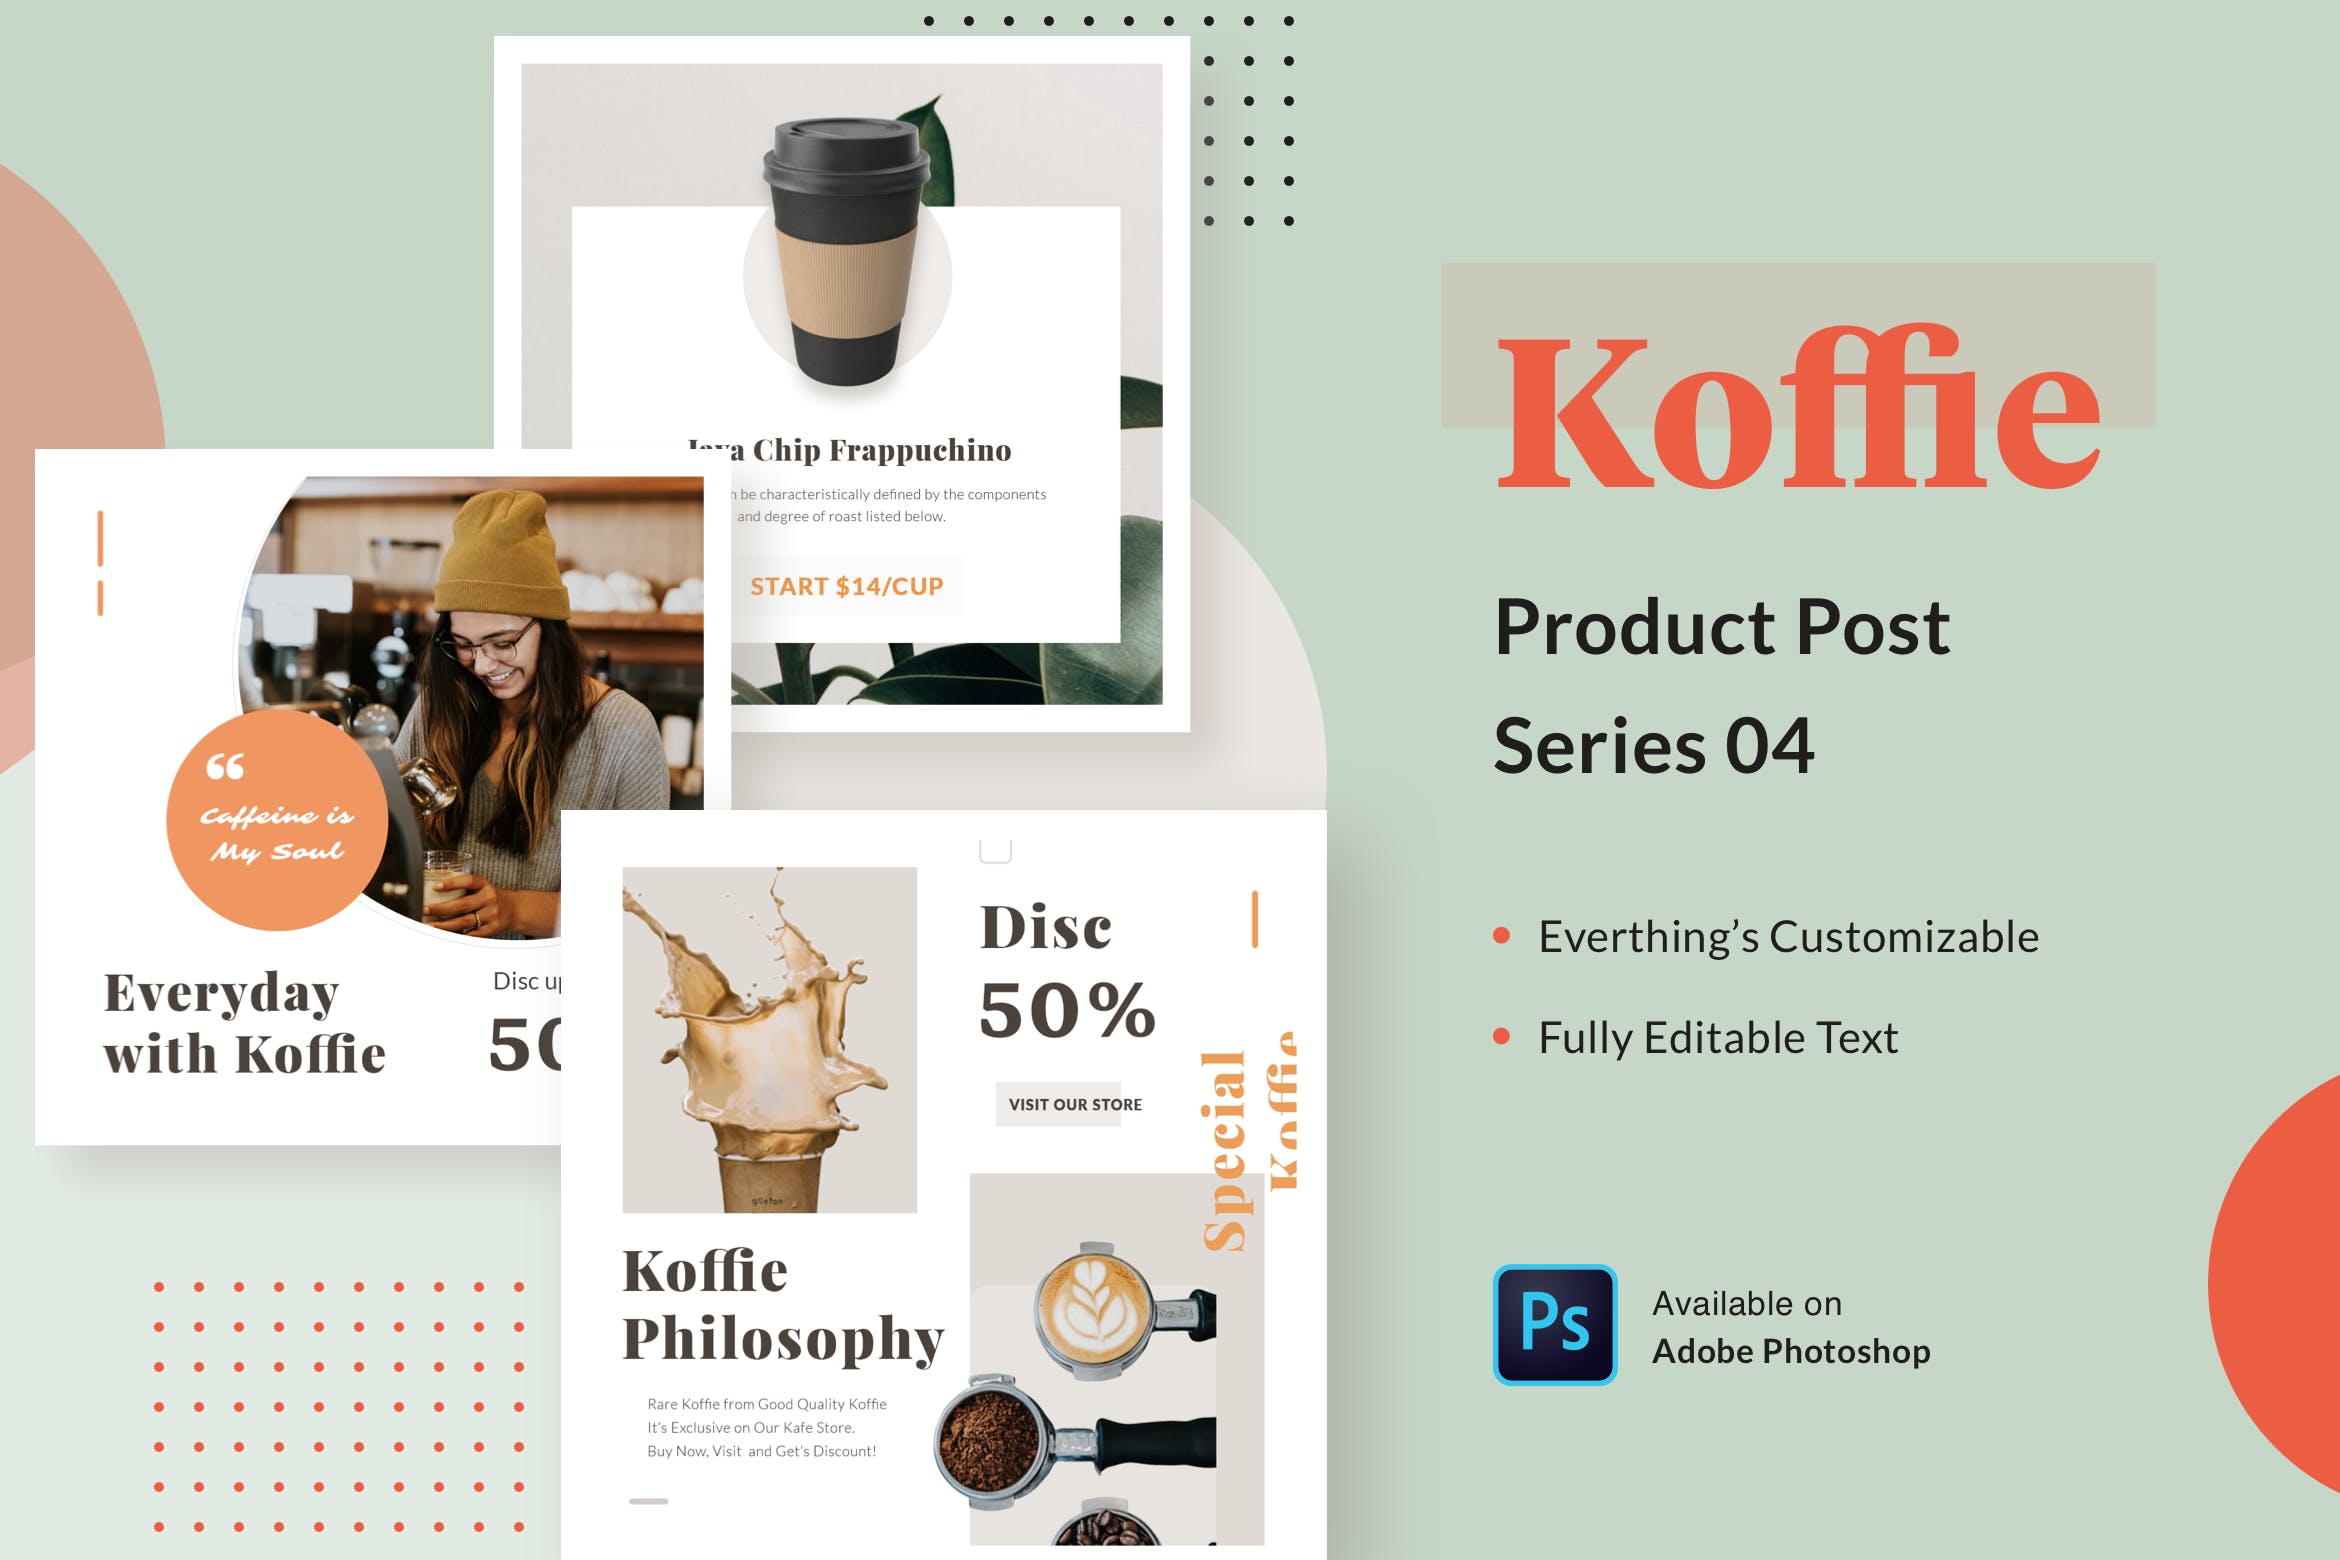 高端咖啡品牌广告设计PSD模板v04 Koffie Product – Series 04插图